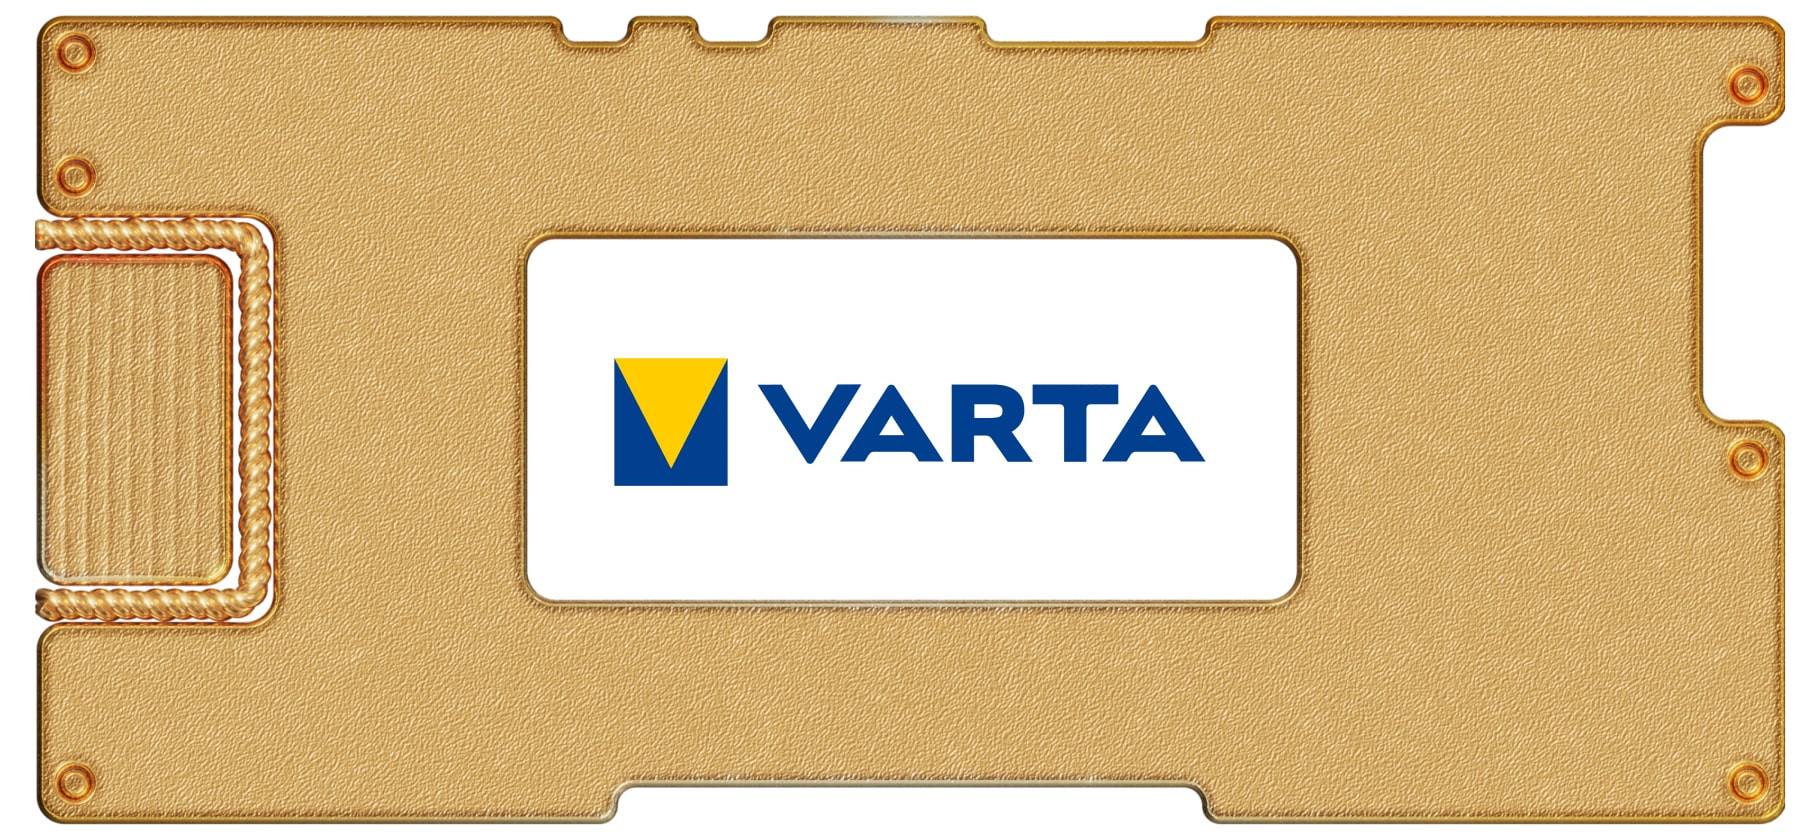 Инвестидея: Varta, потому что надо заменить батарейку